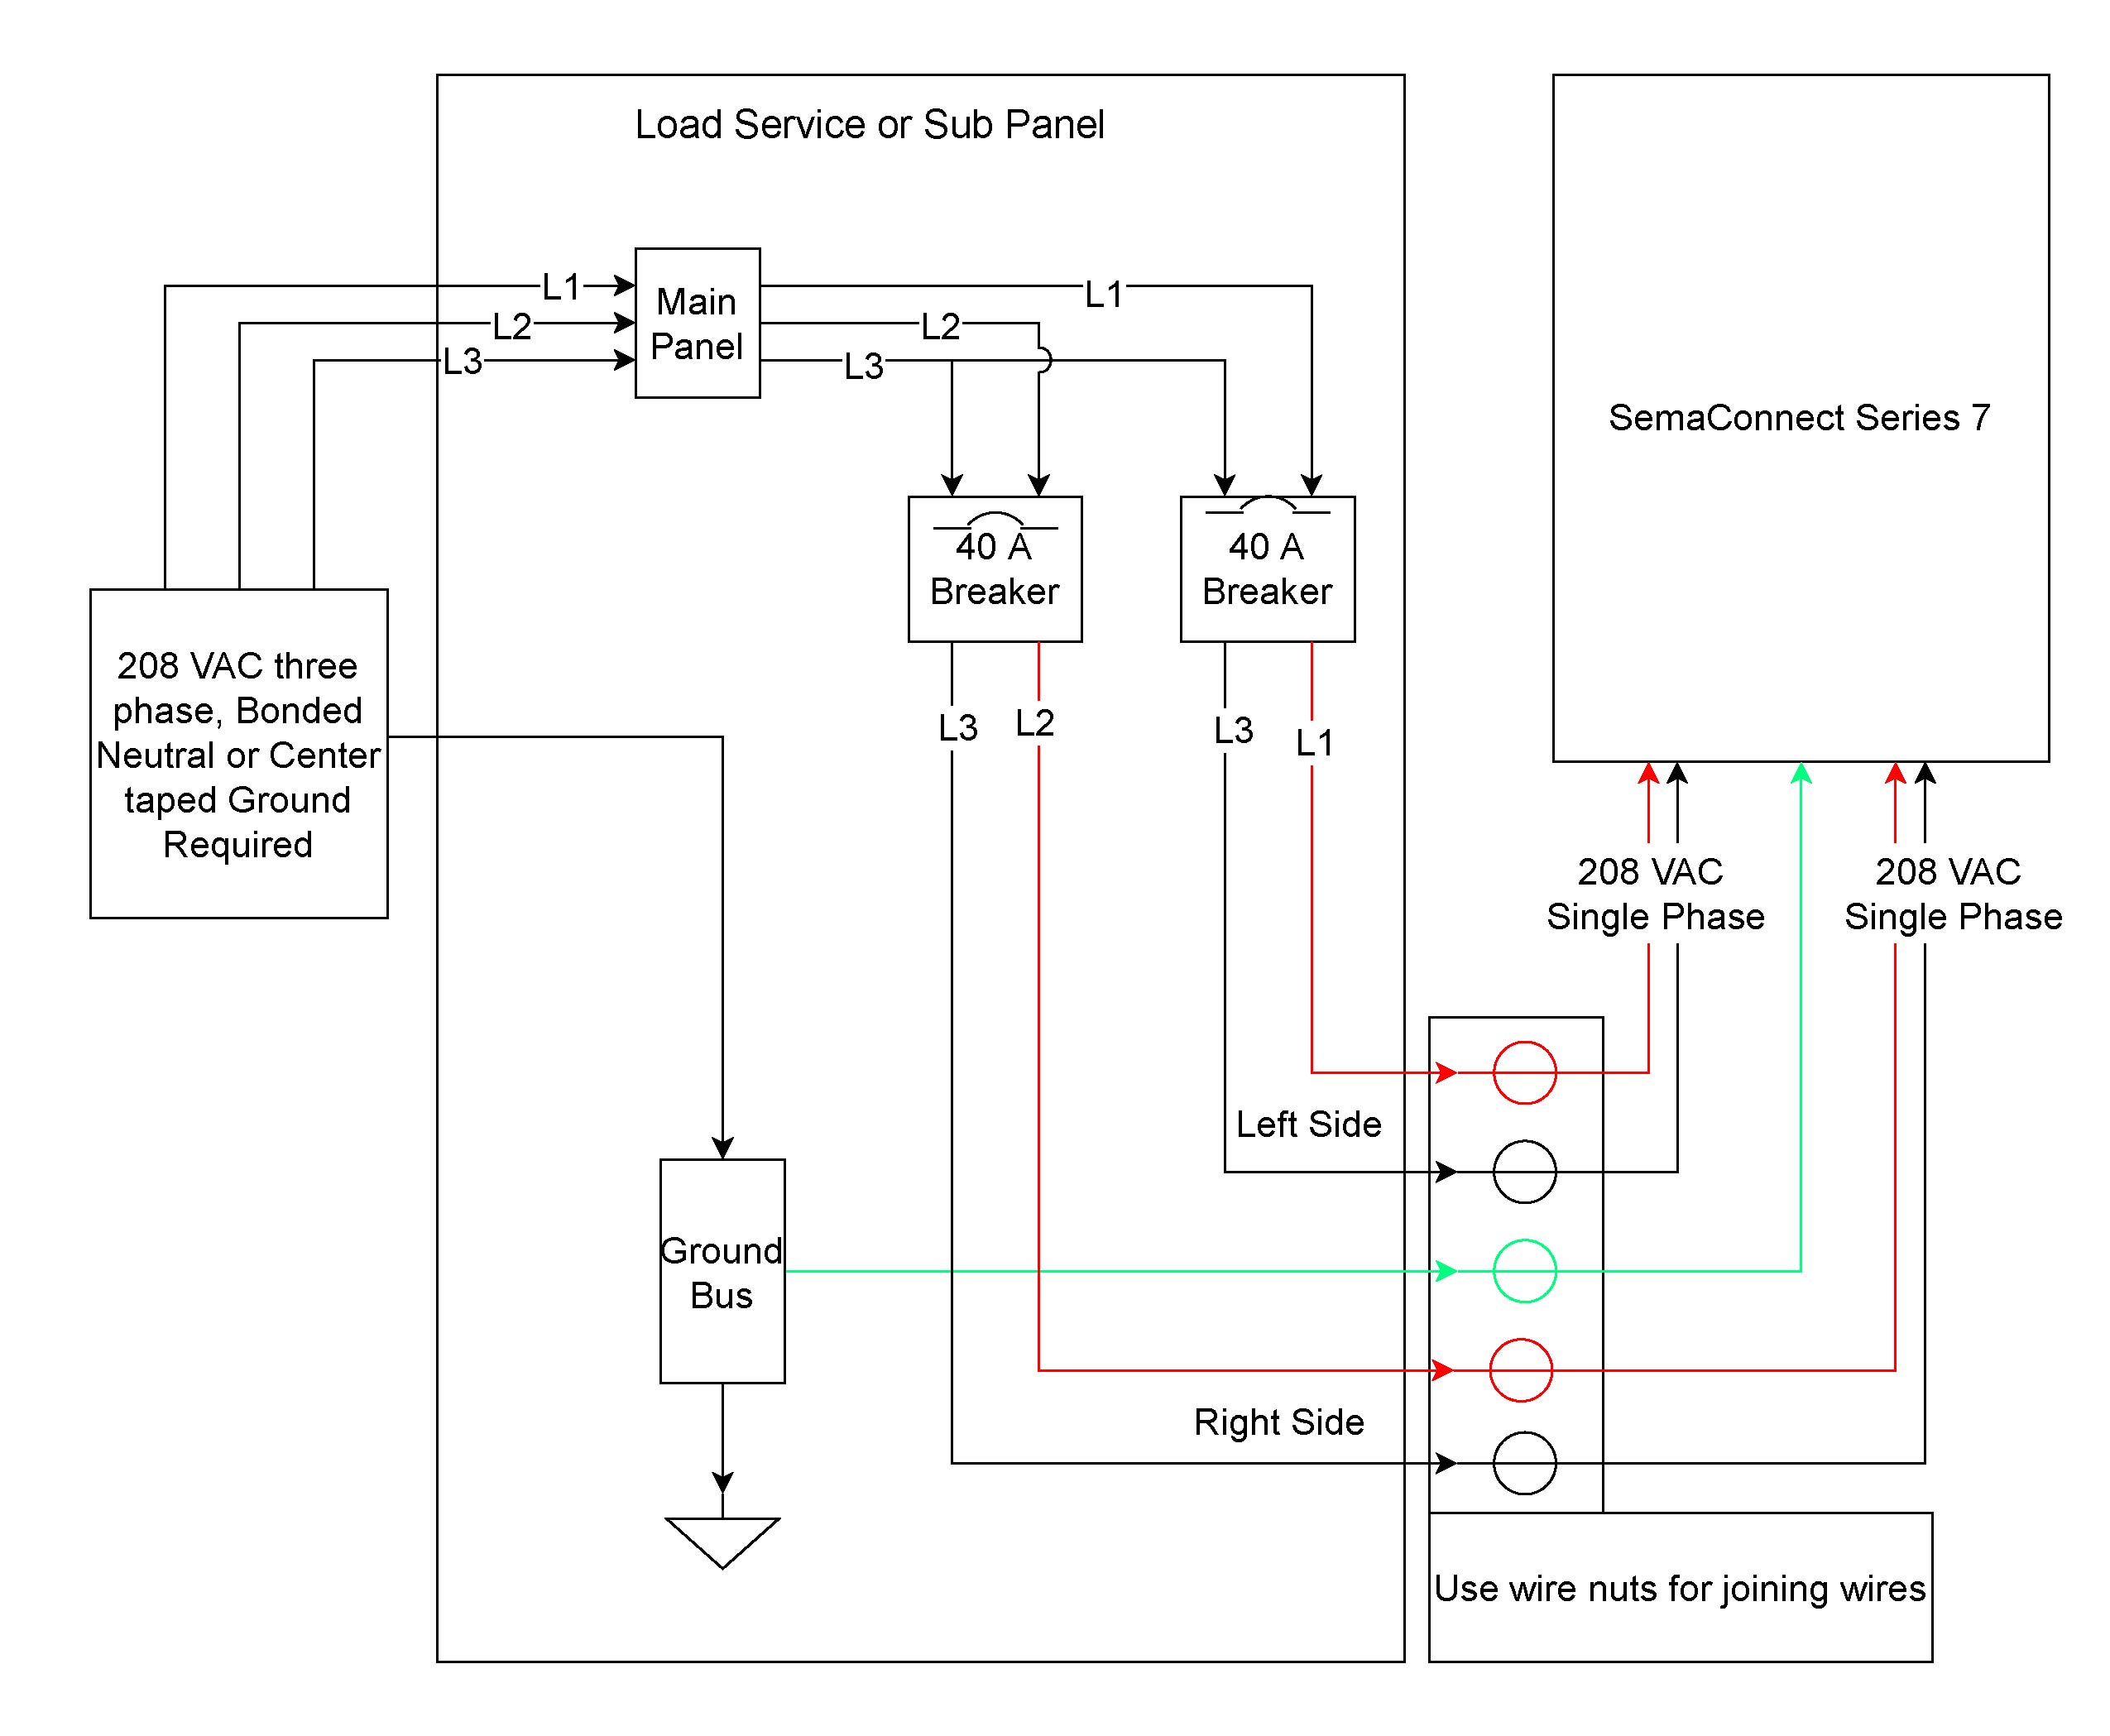 yth 2348 wiring diagram